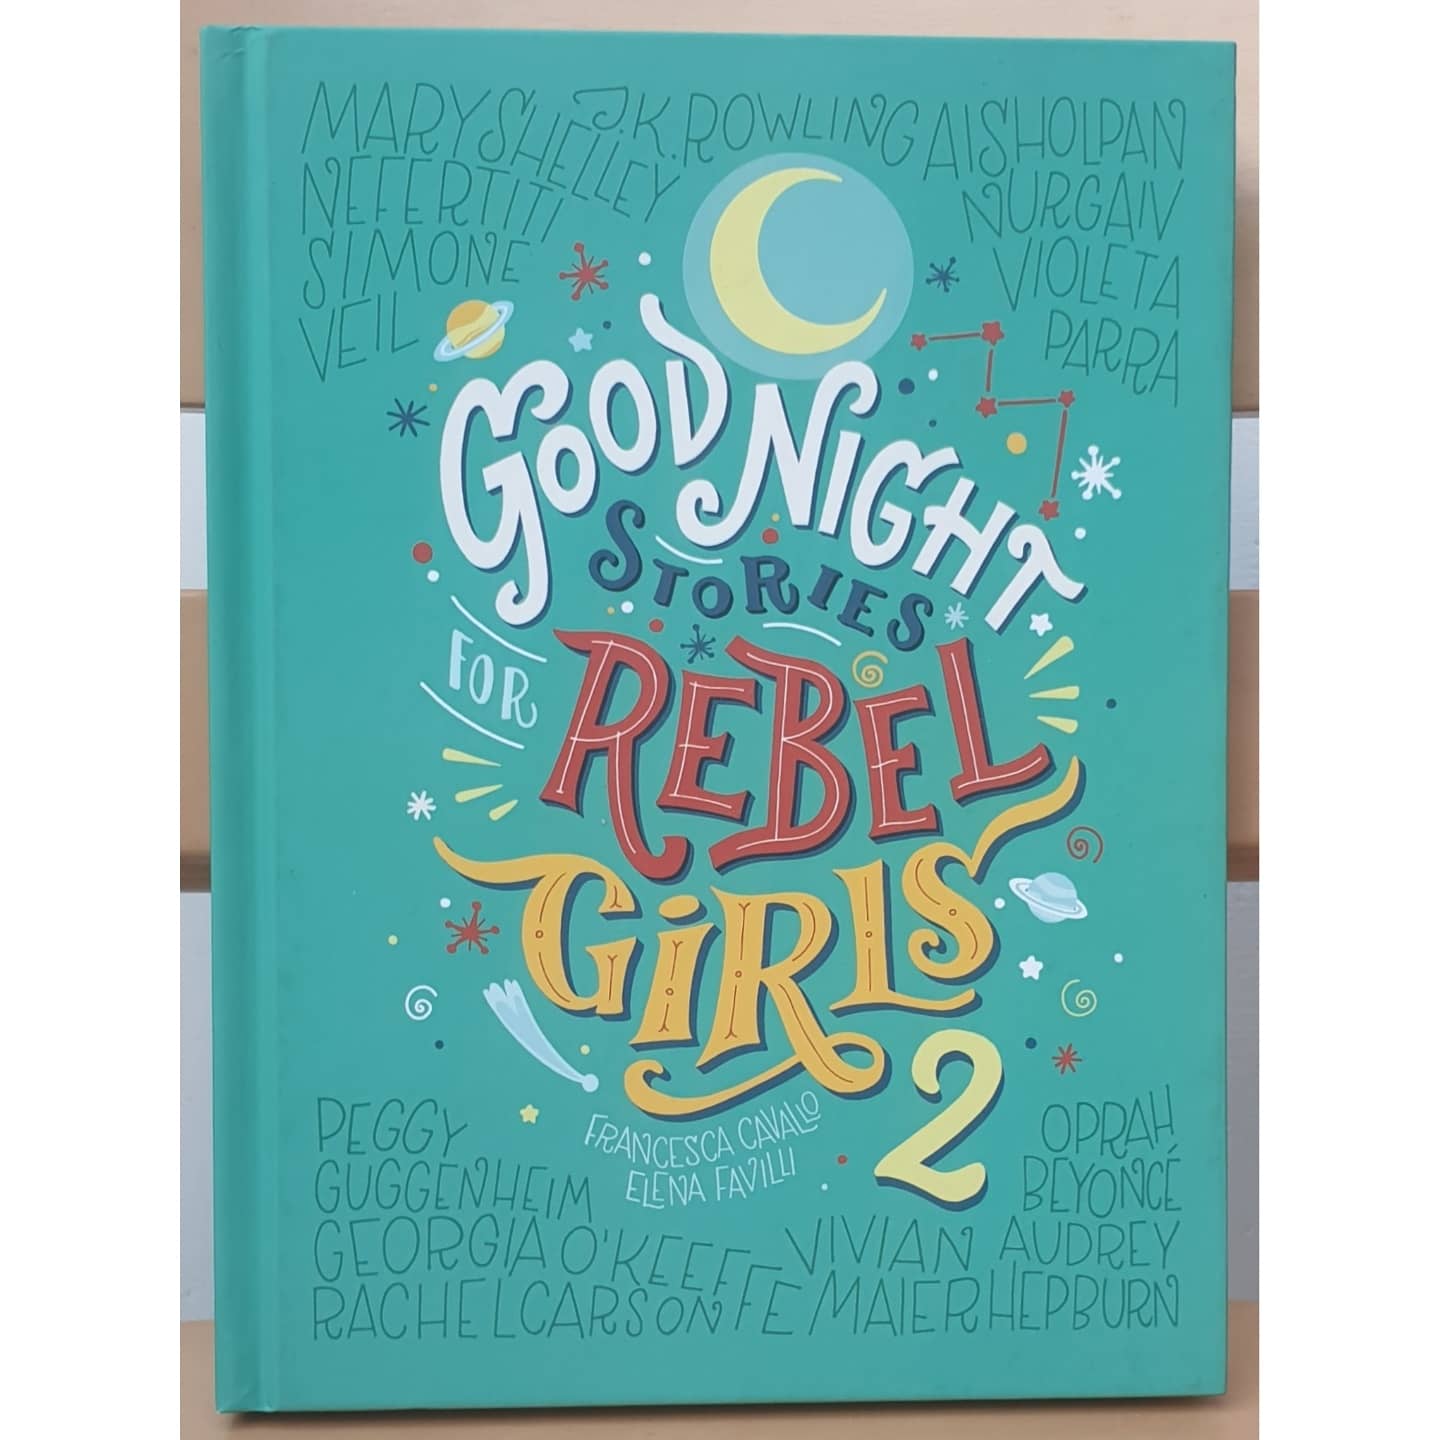 Goodnight stories for Rebel Girls 2